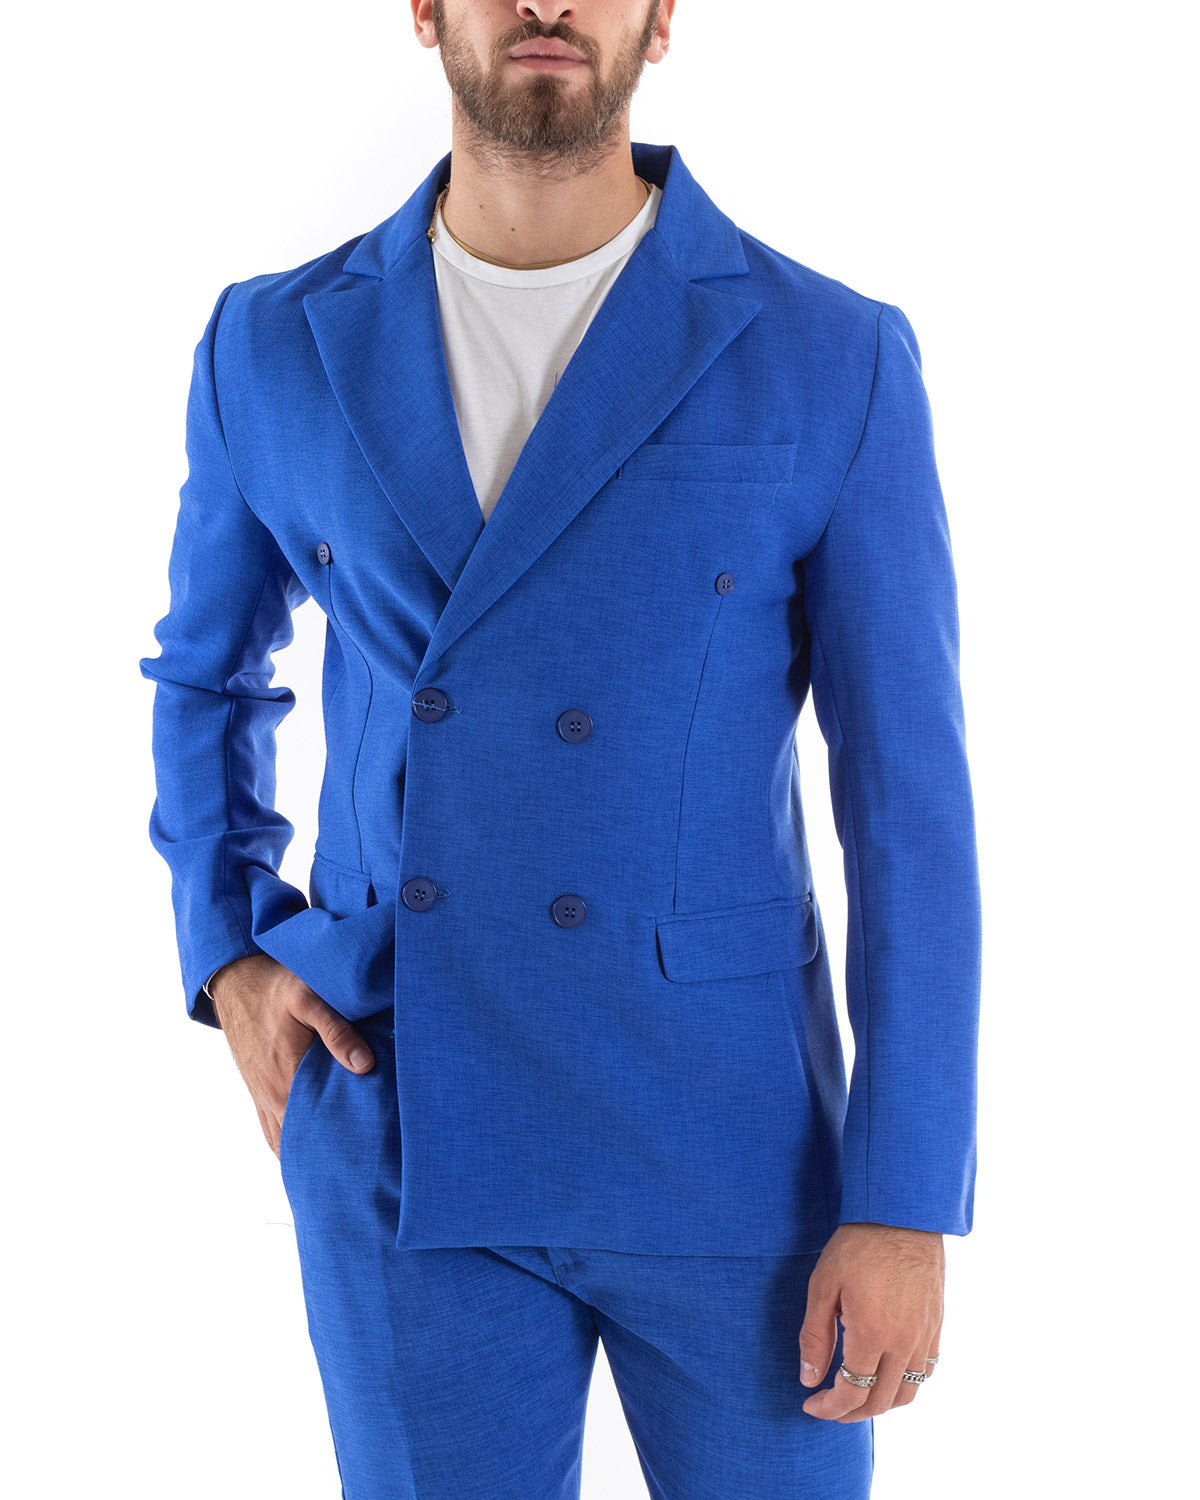 Abito Uomo Doppiopetto Vestito Viscosa Completo Giacca Pantaloni Blu Royal Melangiato Elegante Cerimonia GIOSAL-OU2203A